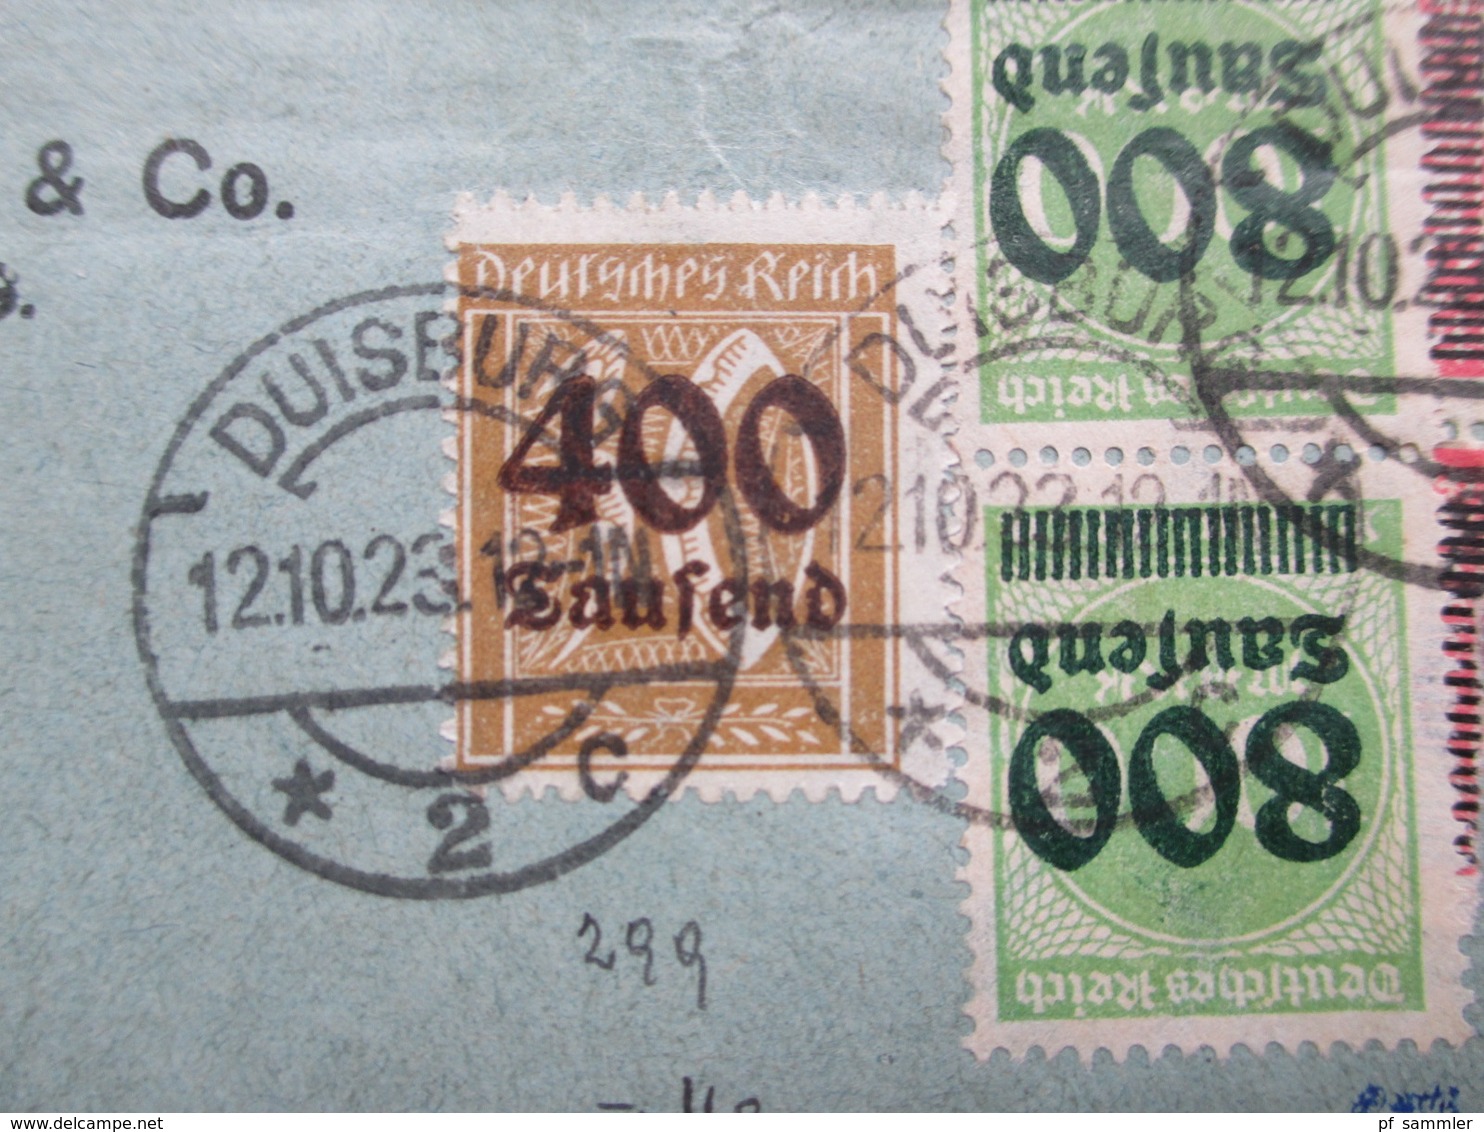 DR Infla 10.1923 MiF Mit 8 Marken Nr. 295, 299, 302 Und 309 Duisburg Nach Velbert Geprüft Einwandfrei Infla Berlin - Lettres & Documents